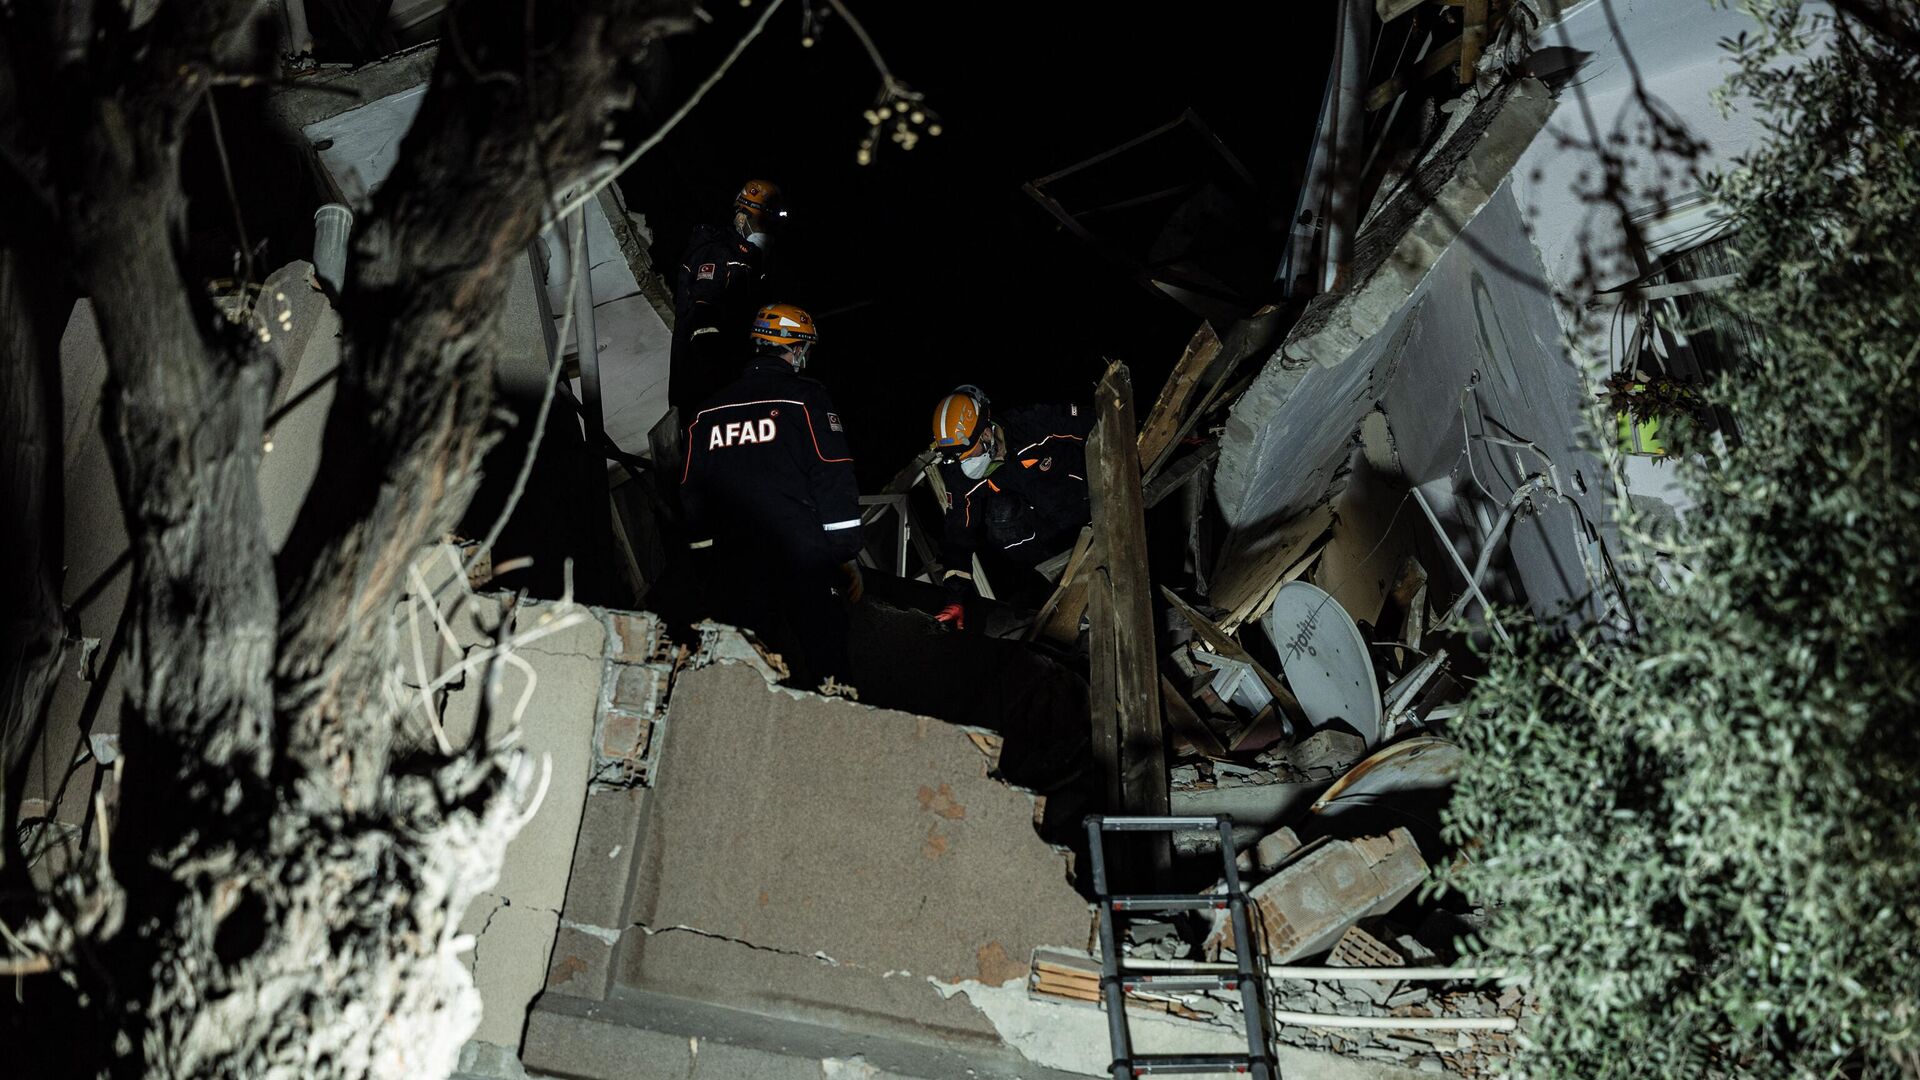 Спасатели ищут пострадавших в рухнувшем здании после второго землетрясения магнитудой 6,4, произошедшего в провинции Хатай на юге Турции, в Антакье - Sputnik Грузия, 1920, 16.03.2023